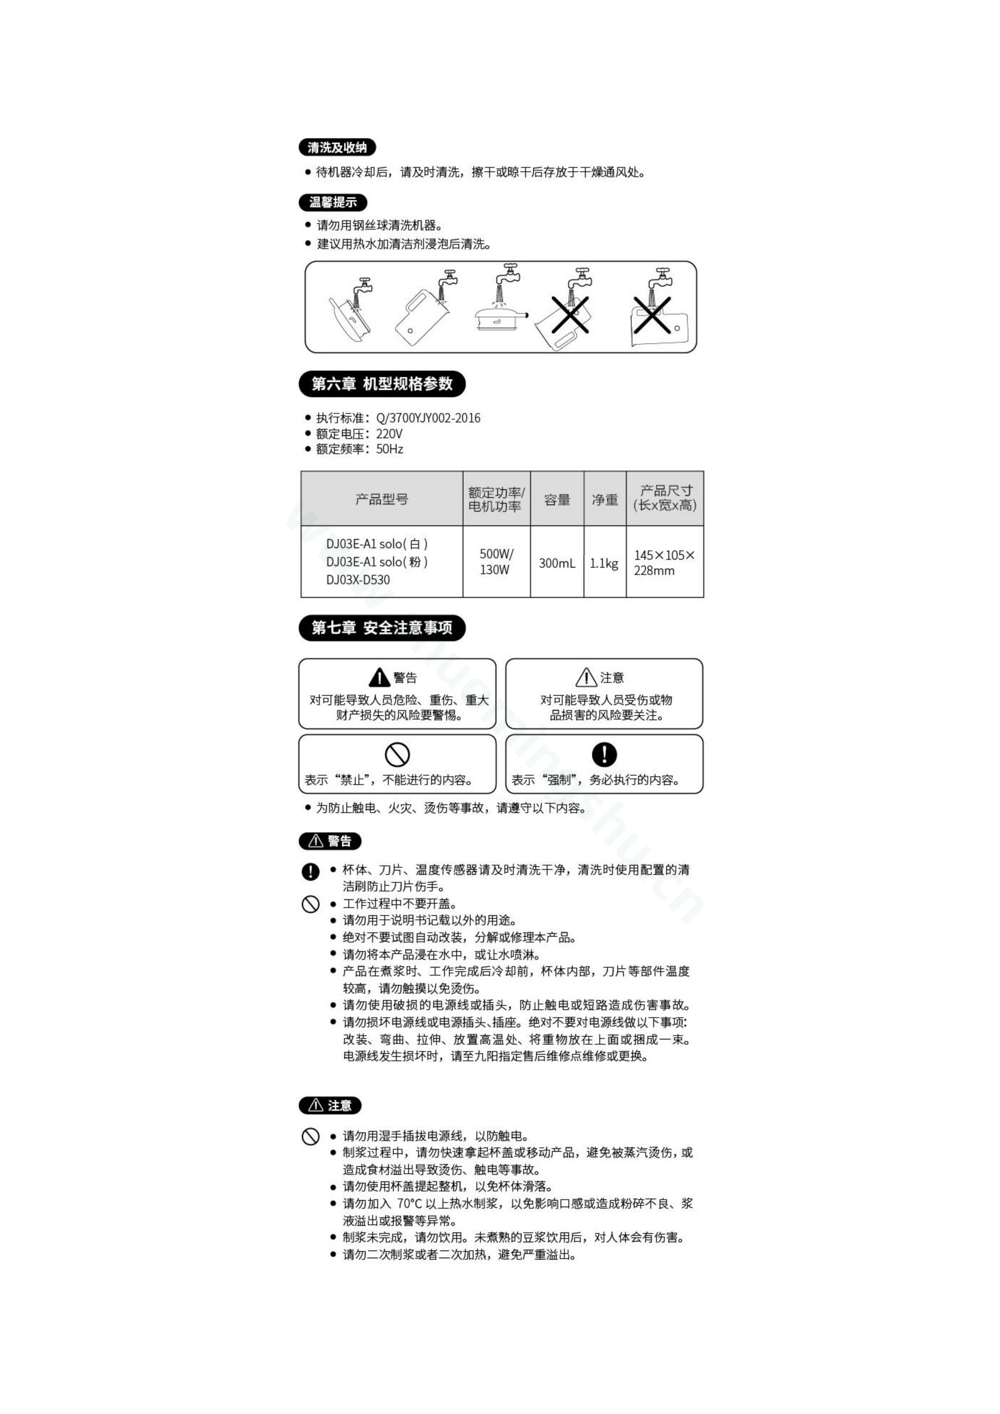 九阳豆浆机DJ03X-D530说明书第4页